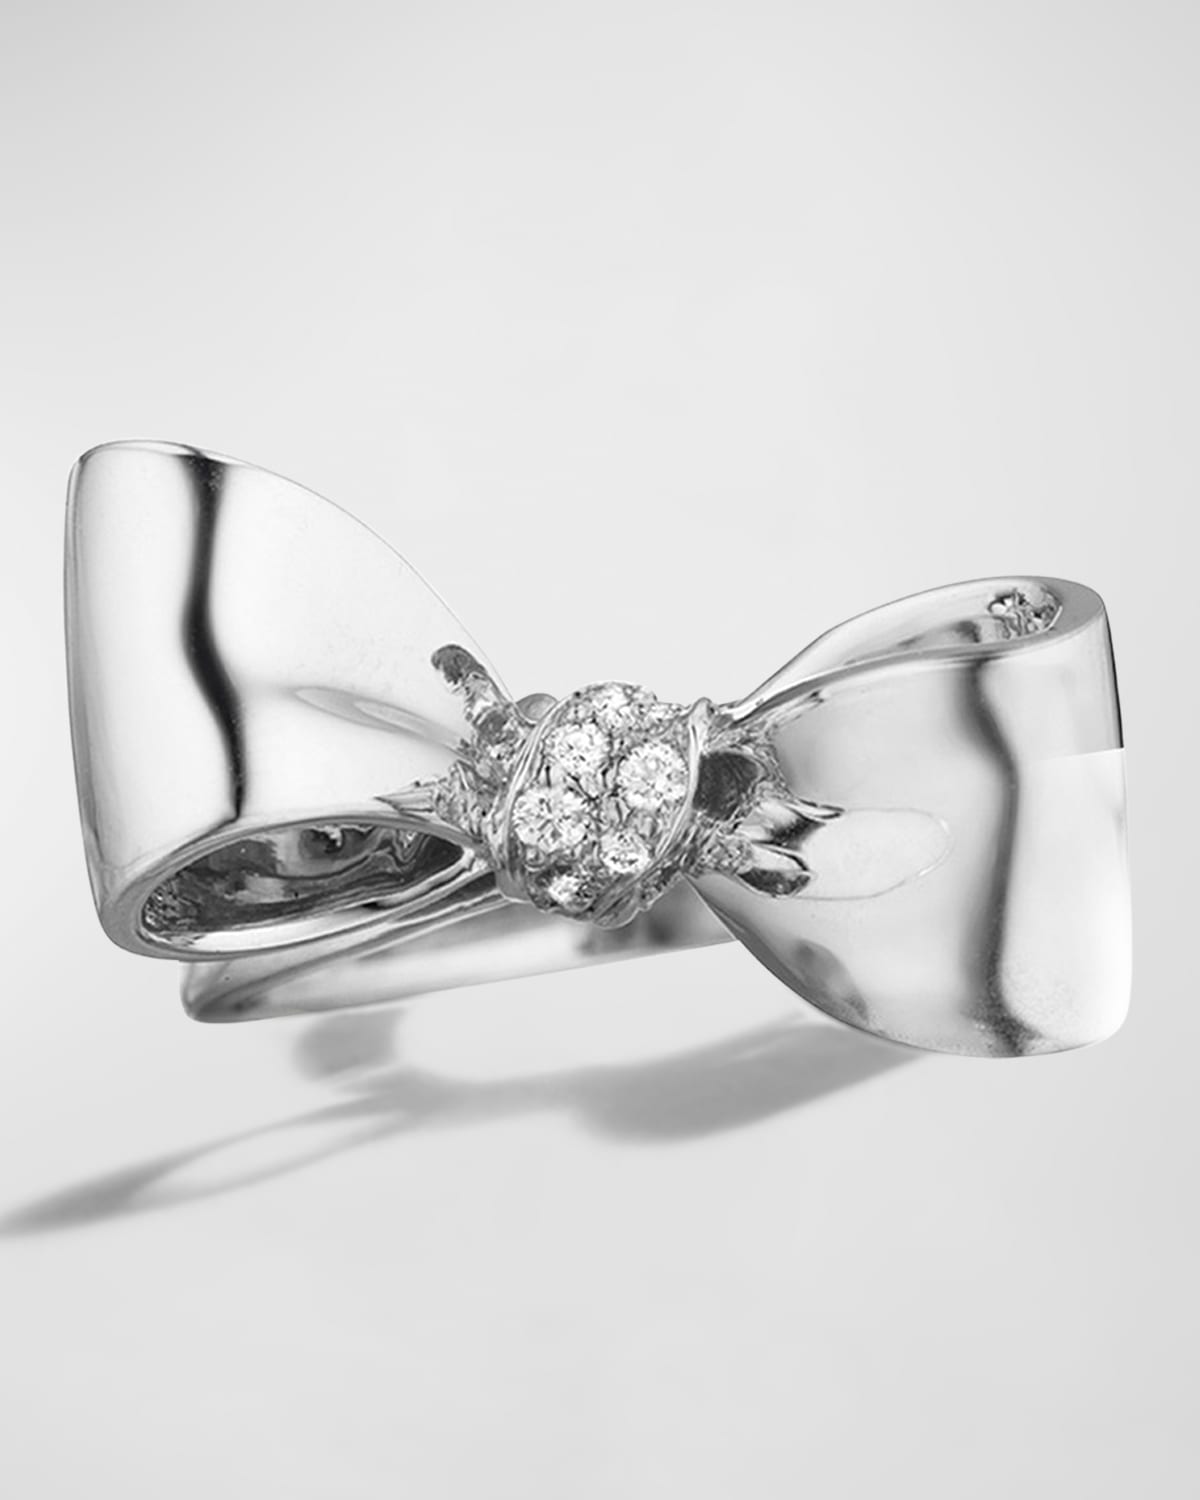 18K White Gold Small White Diamond Knot Bow Ring, Size 7